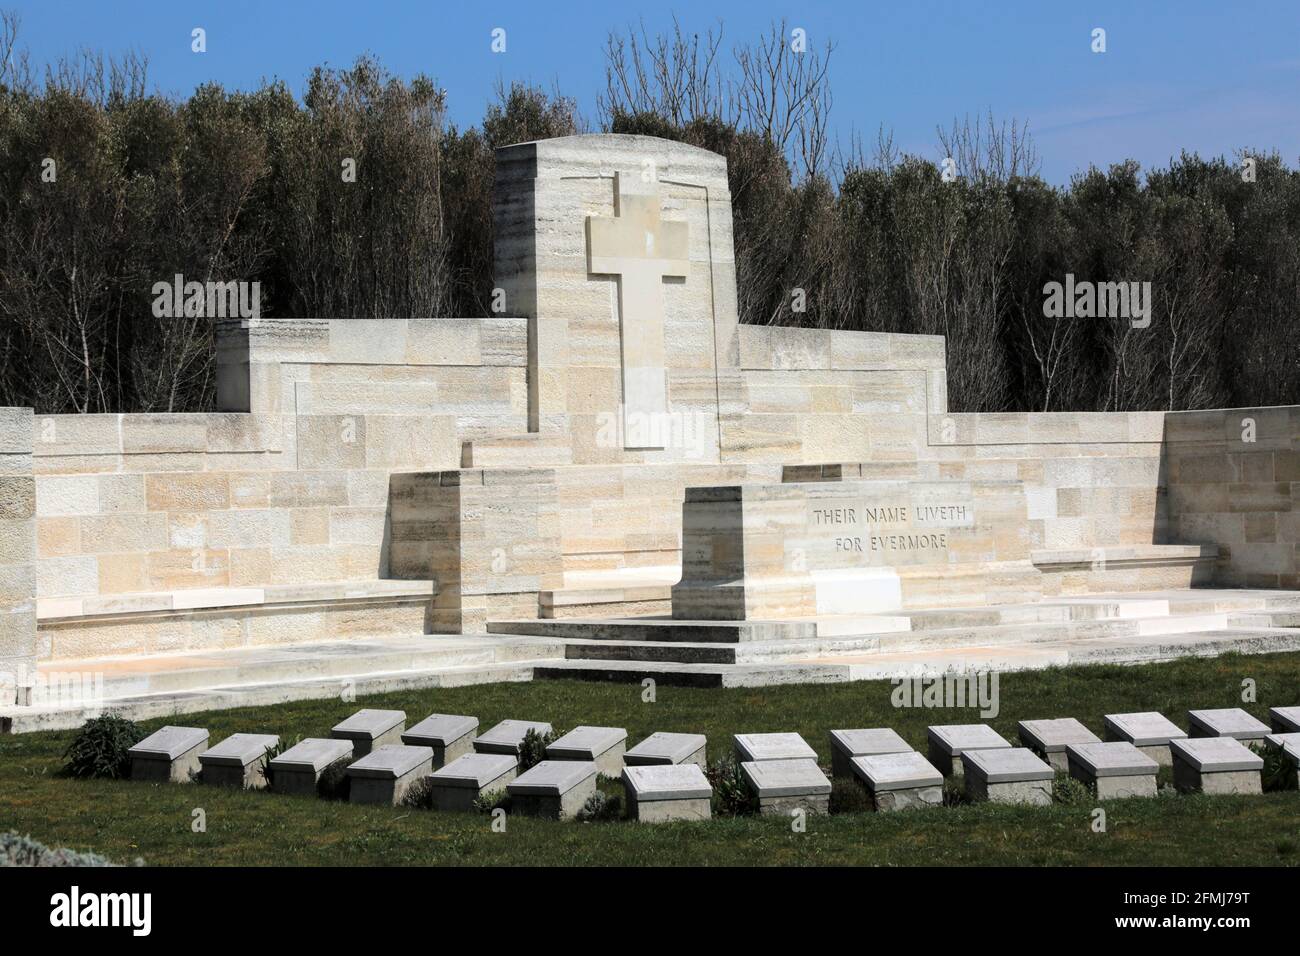 Les tombes des soldats des Forces alliées qui sont morts dans la guerre de Canakkale. Mausolée construite pour les soldats chrétiens à Eceabat. Banque D'Images